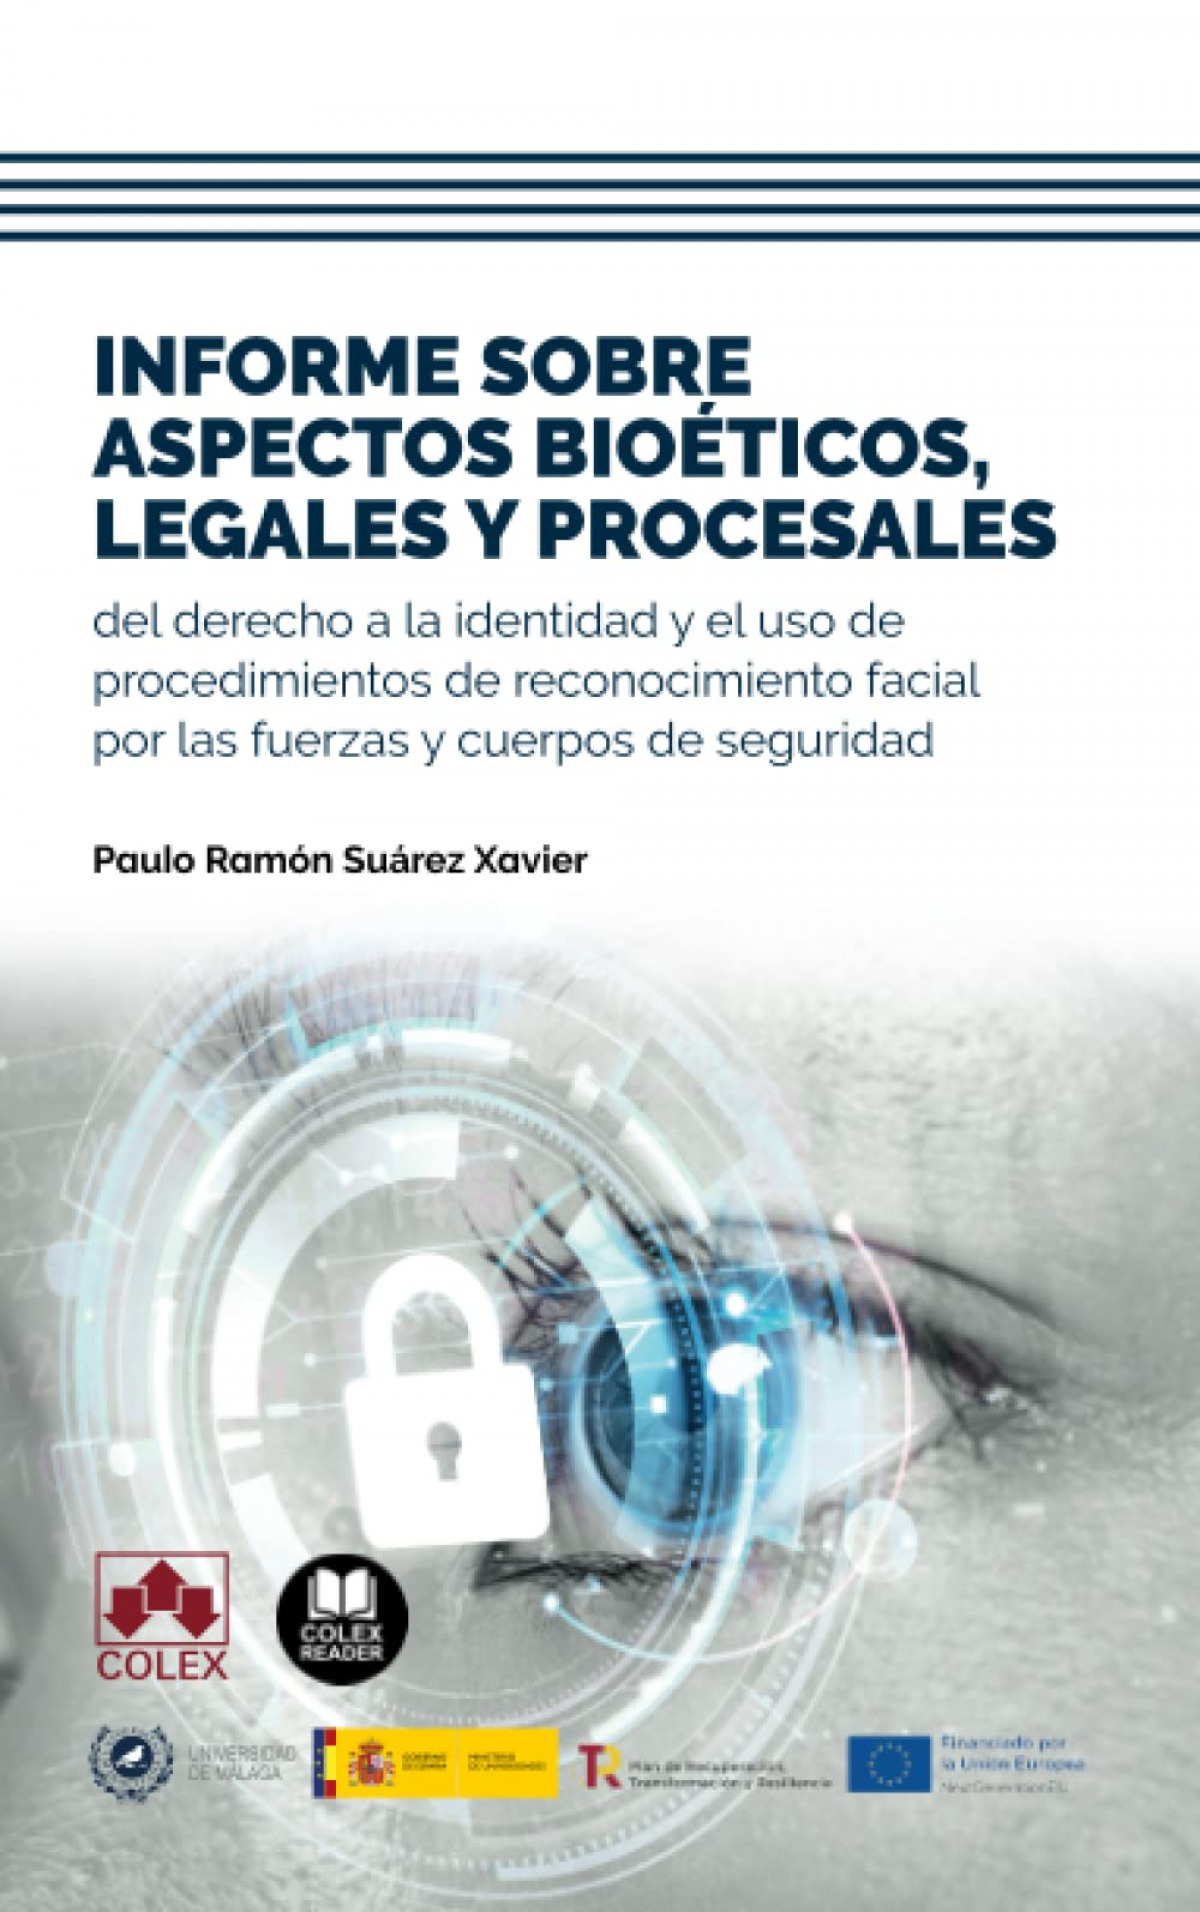 Informe sobre aspectos bioéticos, legales y procesales del derecho a la identidad y el uso de procedimientos de reconocimiento facial por las fuerzas y cuerpos